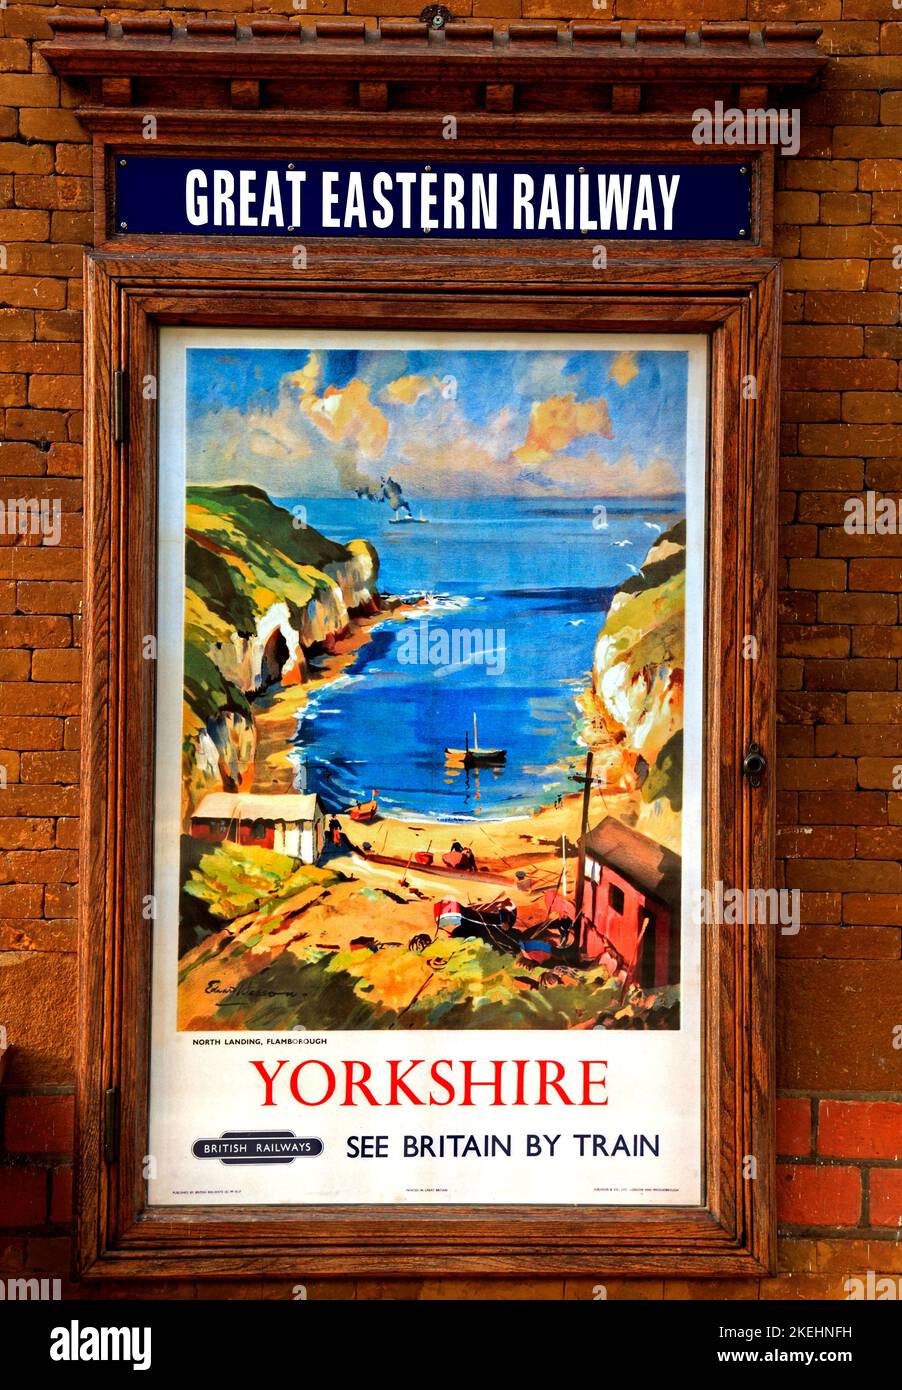 Affiche publicitaire de British Railways, Great Eastern Railway, Wolferton Station, Norfolk, vue artistique de Flamborough, Angleterre, Royaume-Uni Banque D'Images